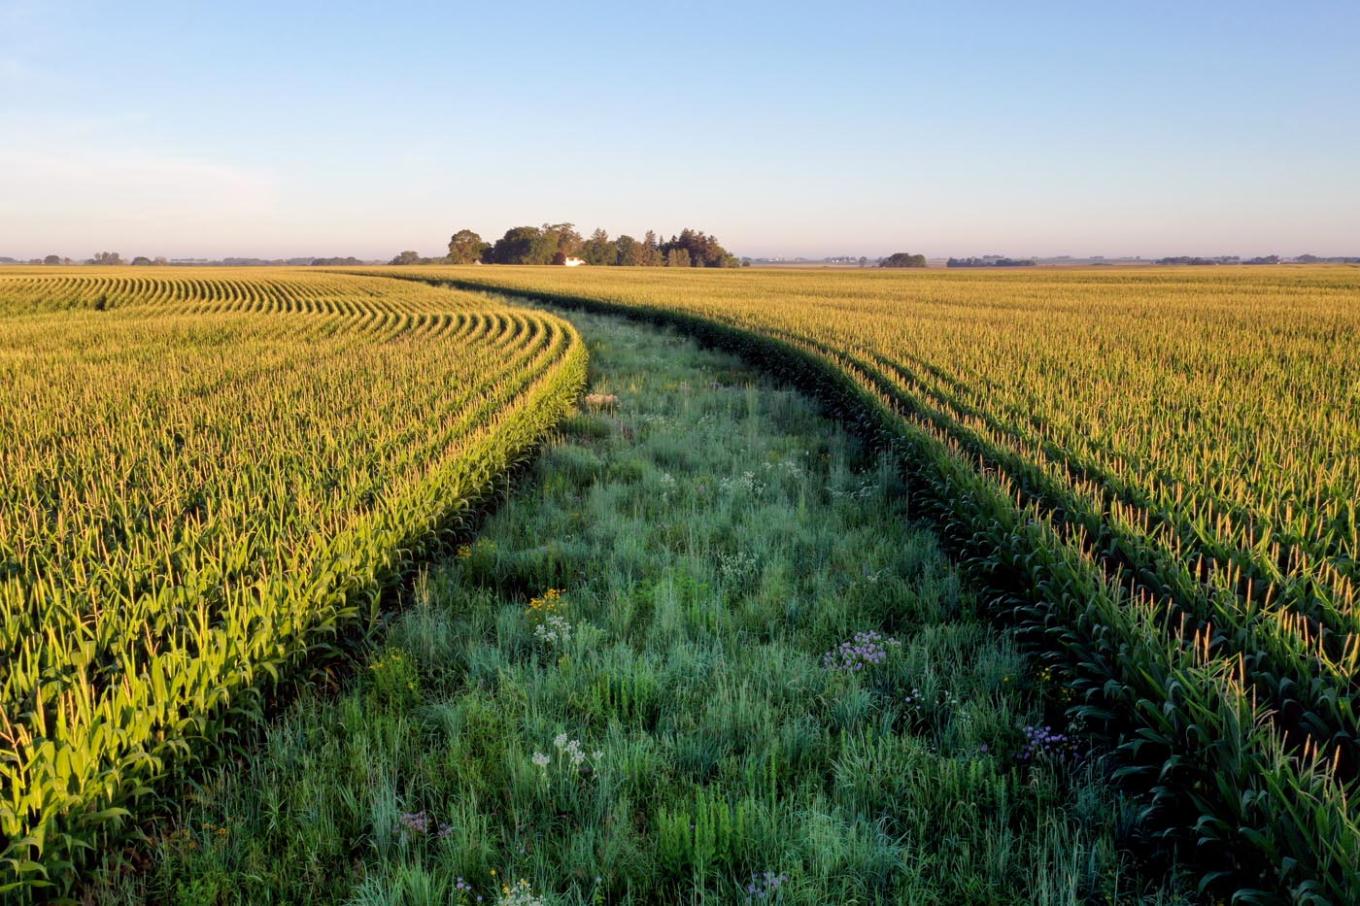 tassels and prairie strips   private farm near rowley, ia